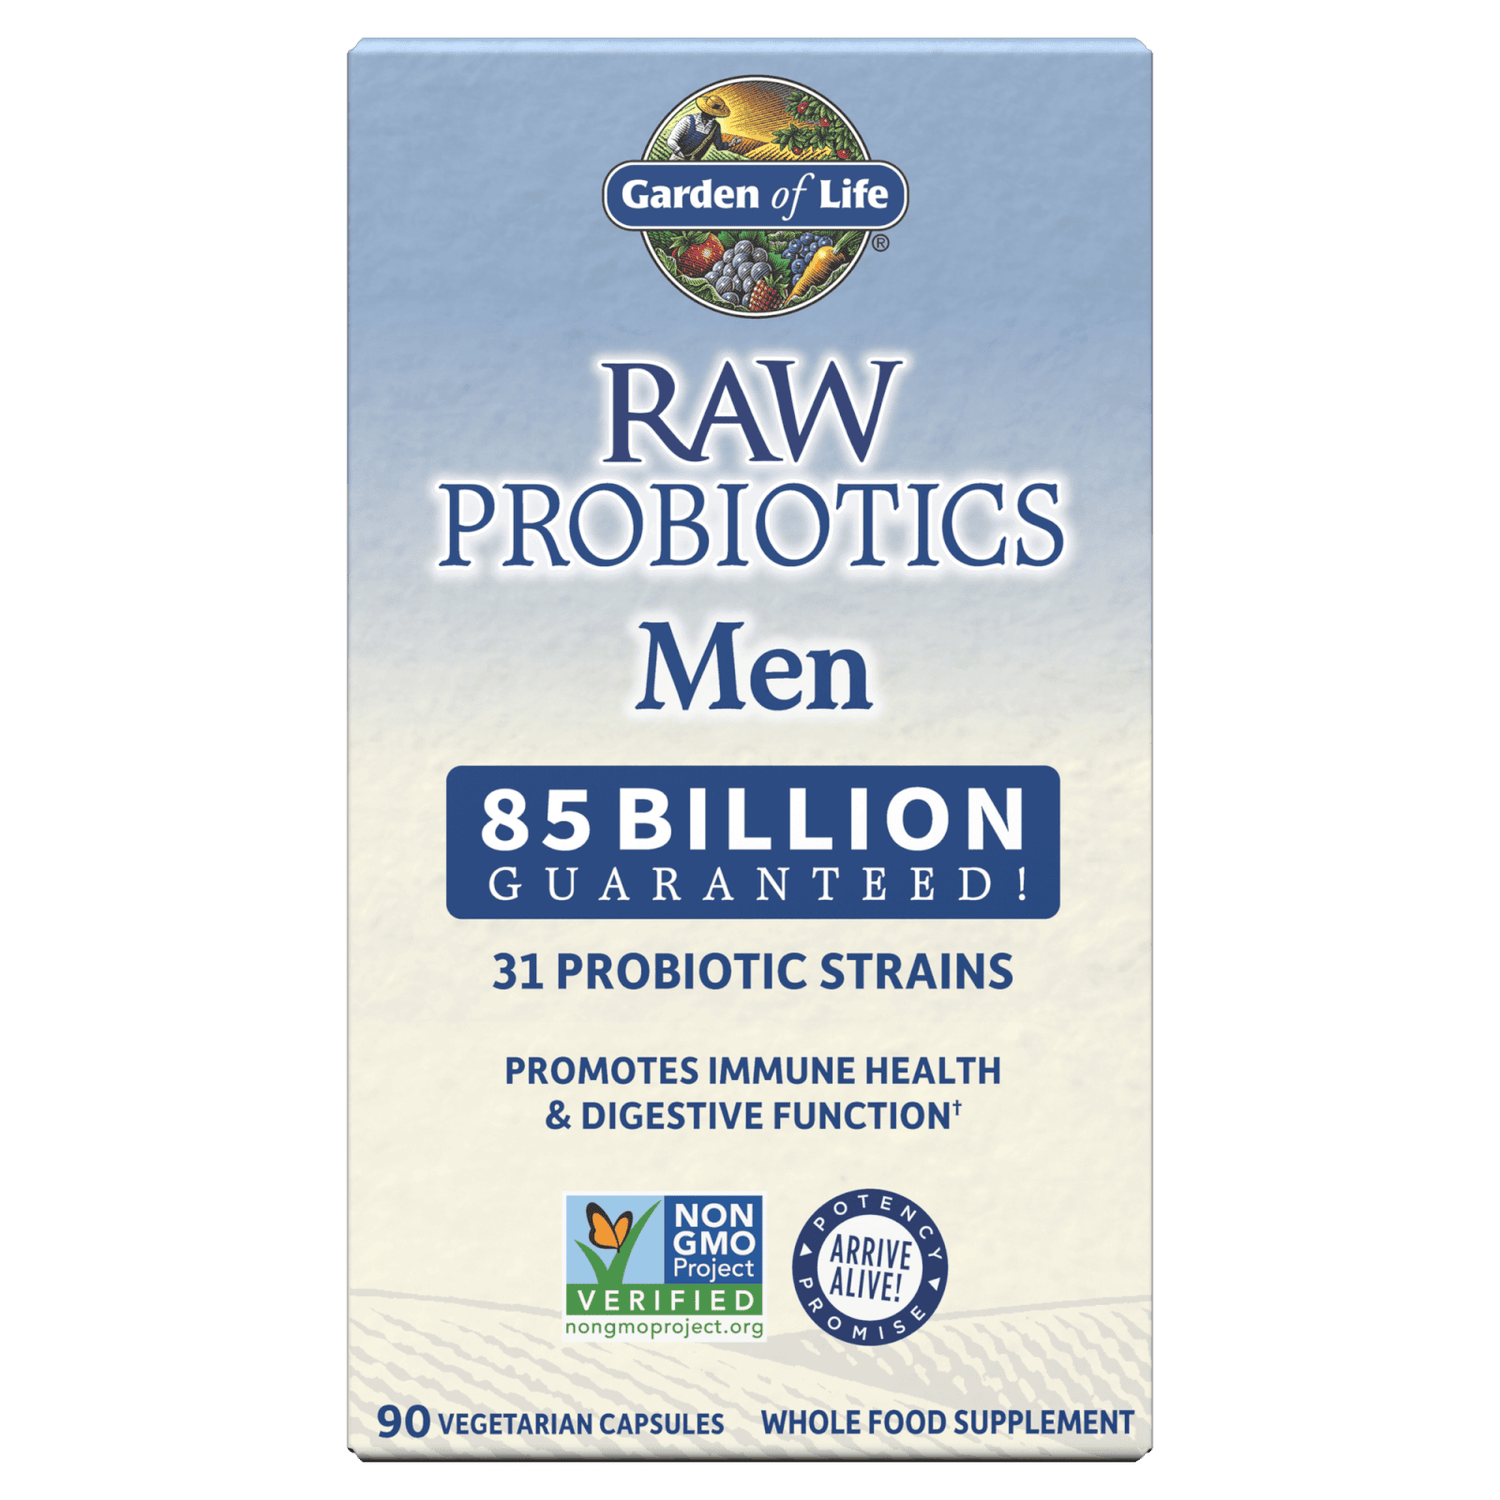 Raw Microbiomes pour hommes - Rafraîchissant - 90 gélules